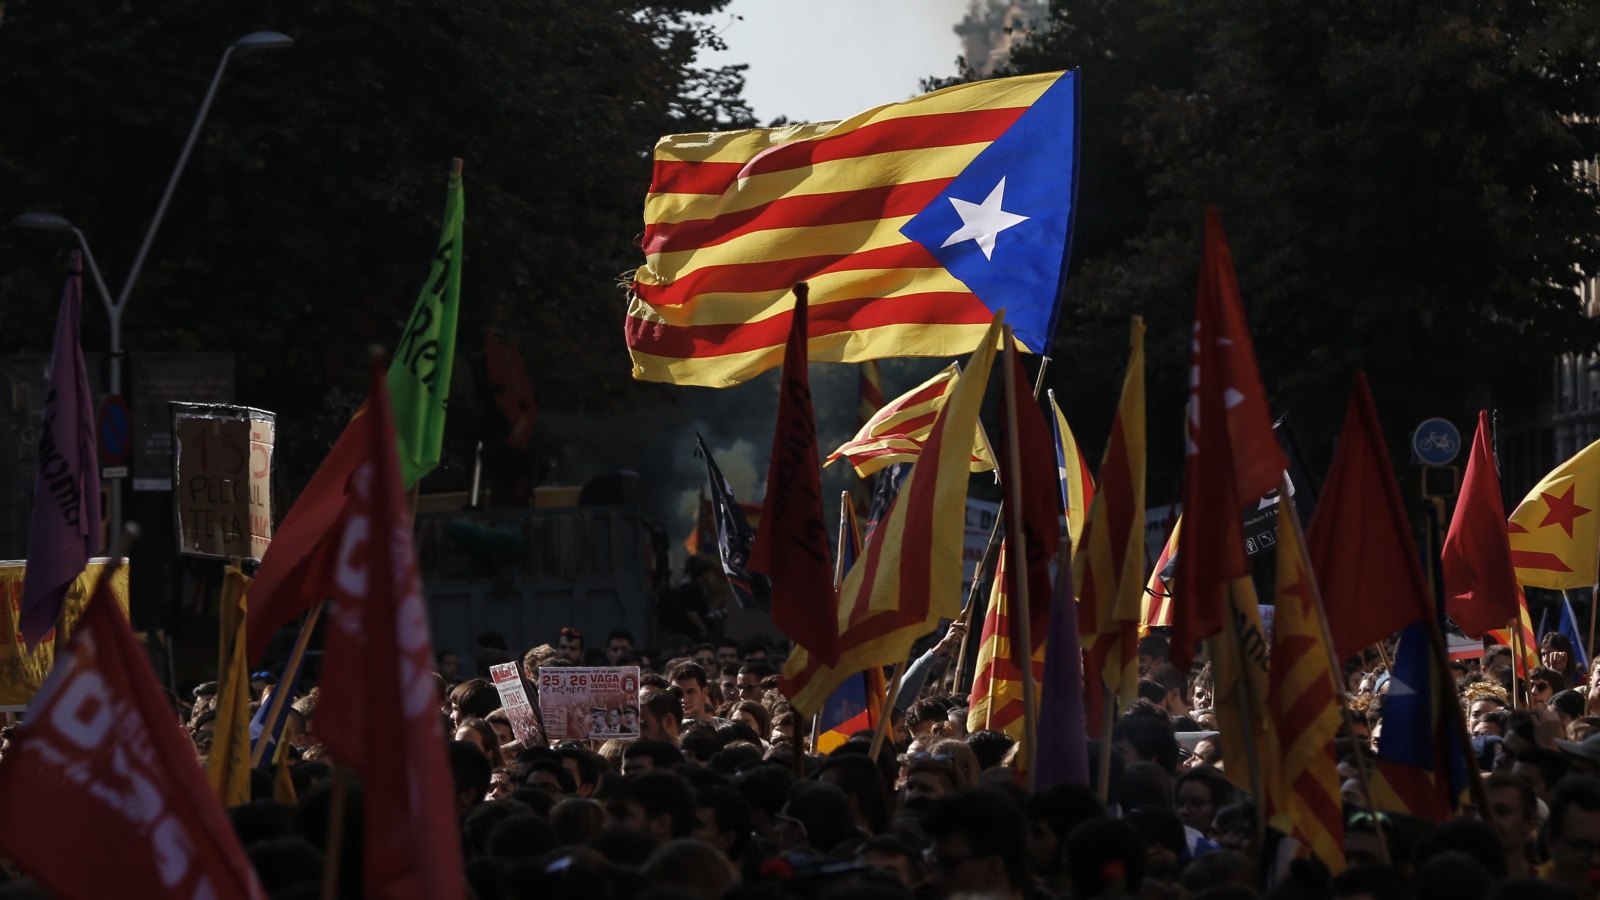 الآلاف من الكتالونيين خرجوا إلى شوارع برشلونة للمطالبة بإعلان الانفصال عن إسبانيا(غيتي)